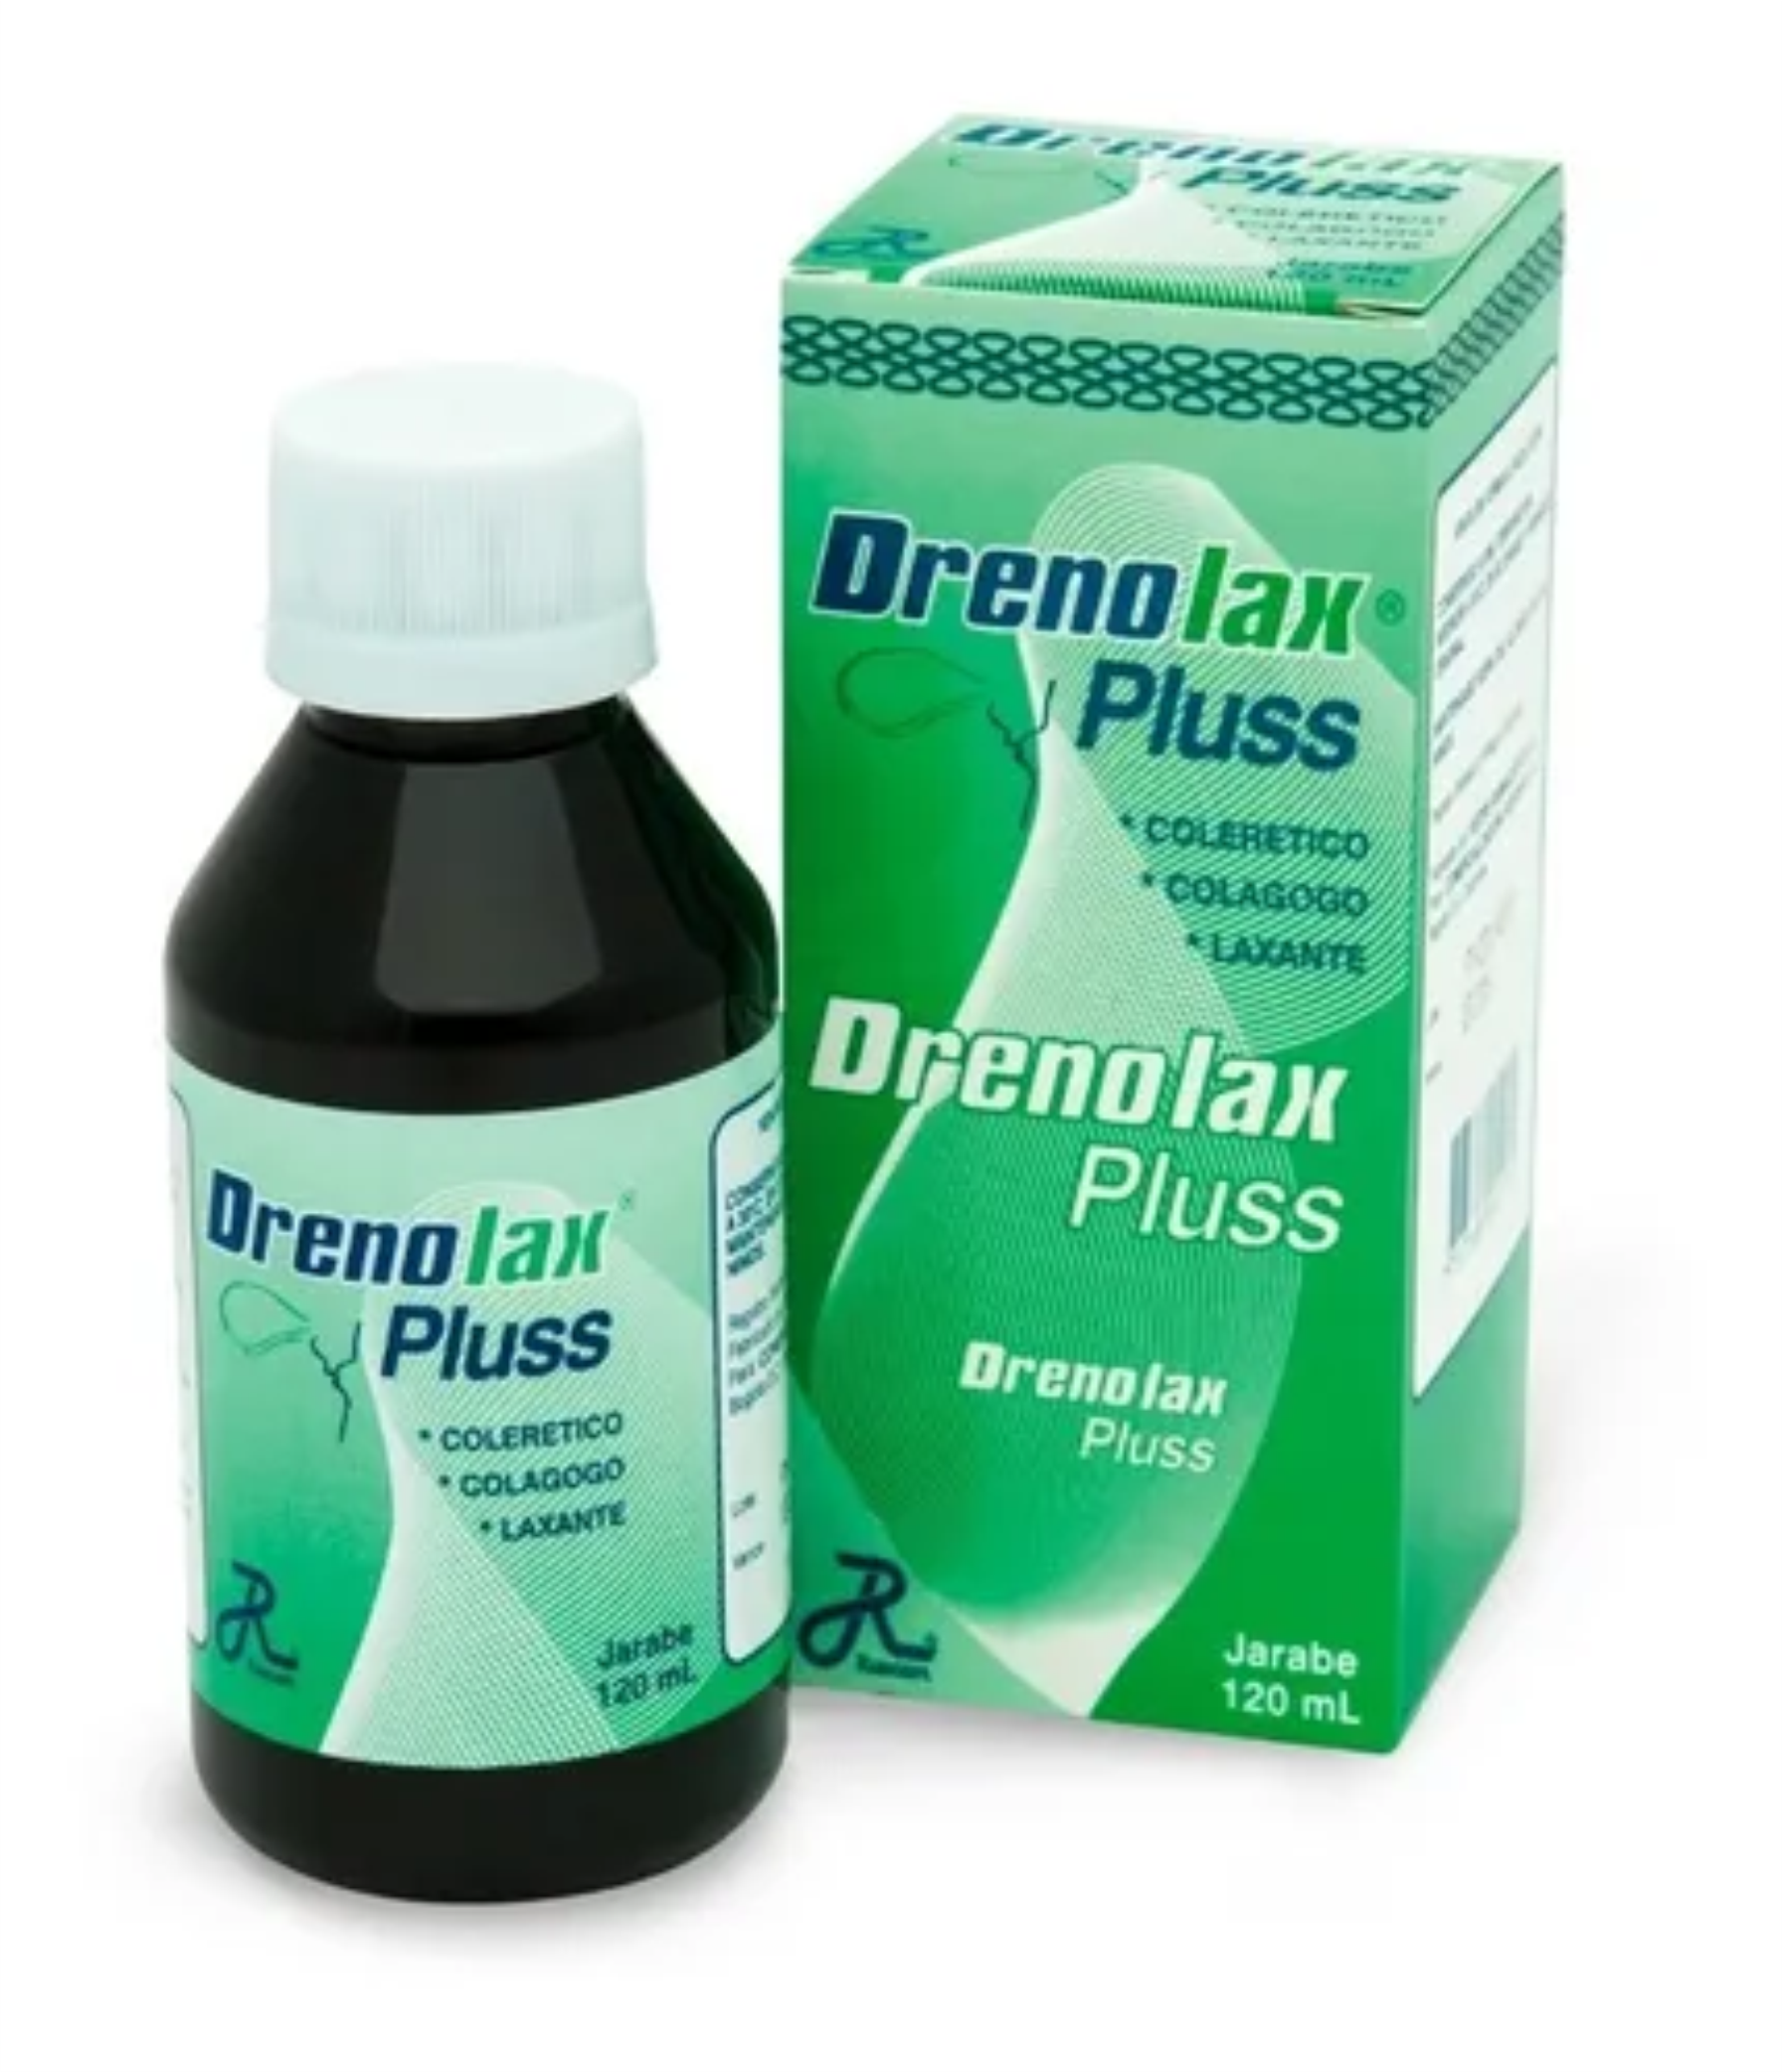 Drenolax Pluss Jarabe 120 mL